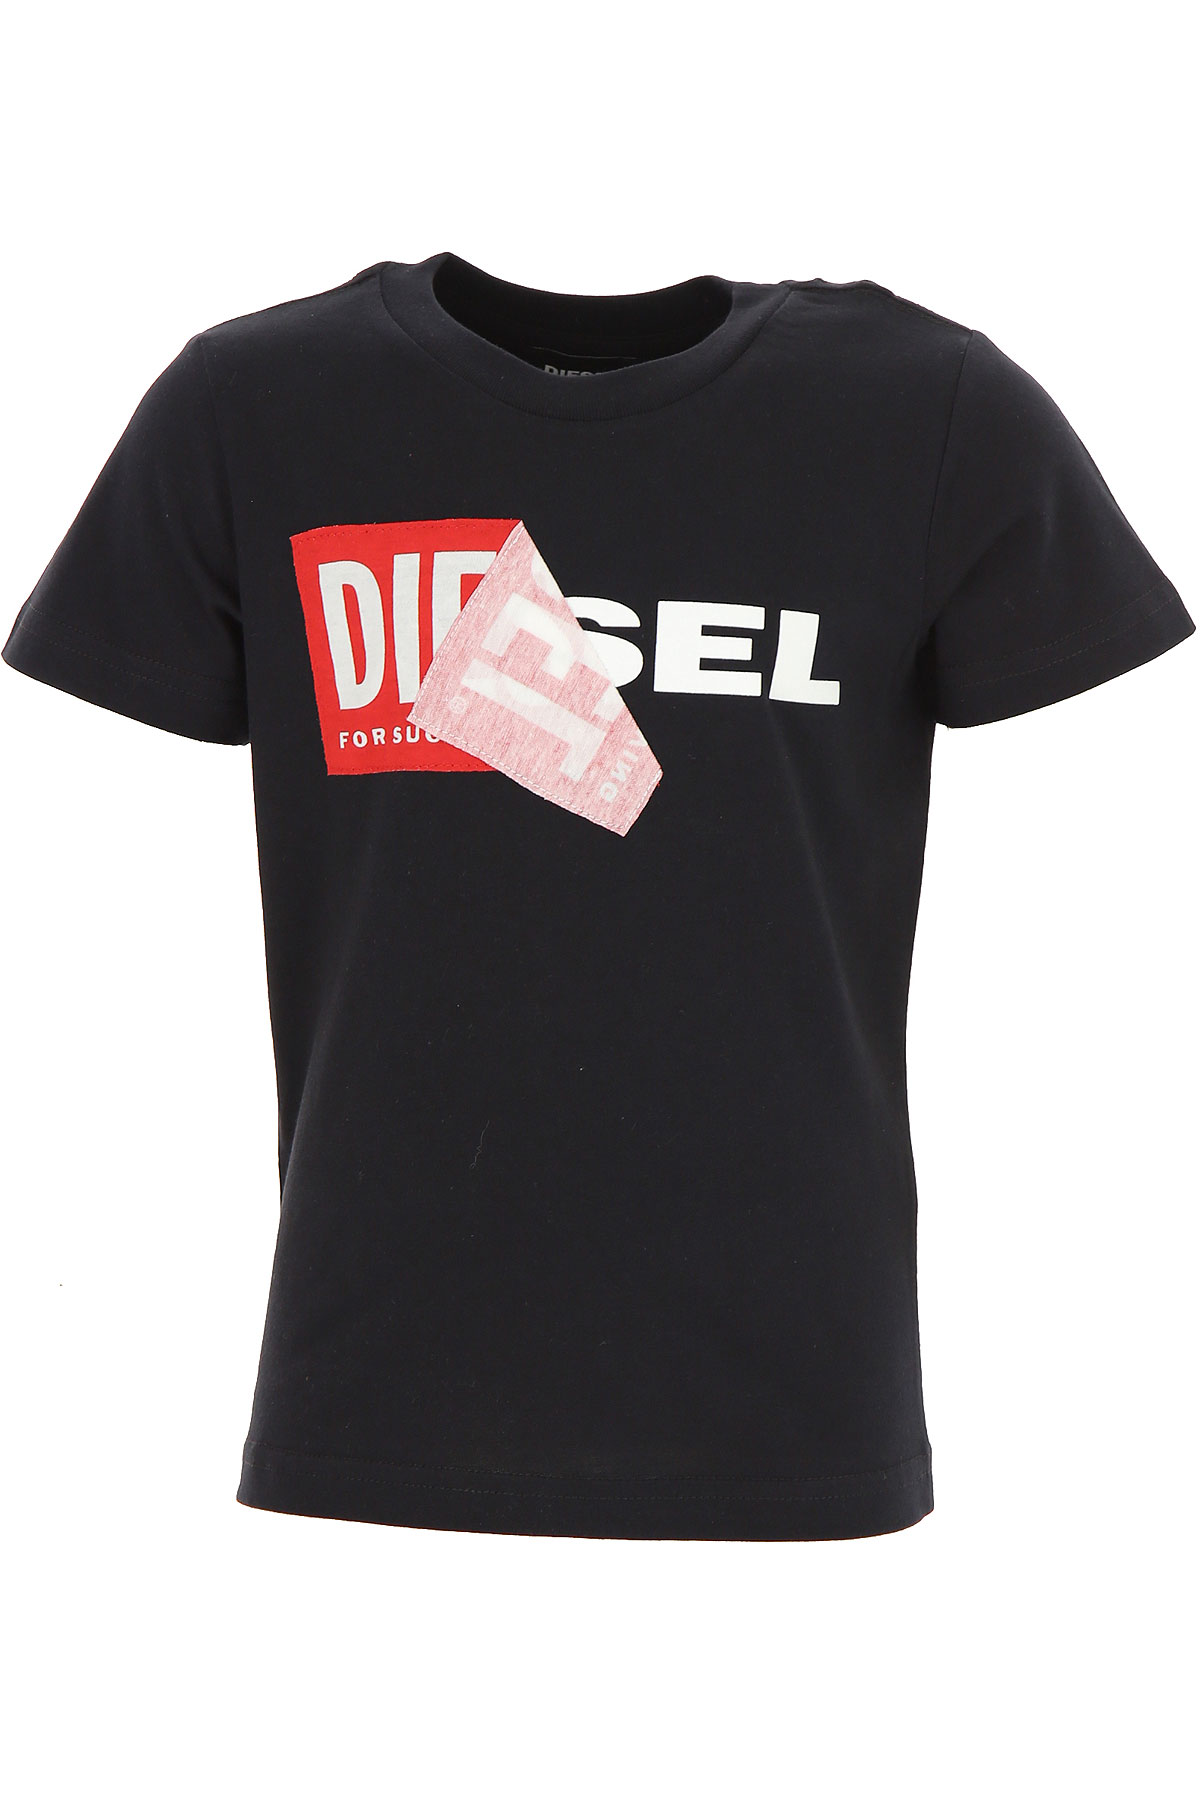 Diesel Kinder T-Shirt für Jungen, Schwarz, Baumwolle, 2017, 10Y 8Y